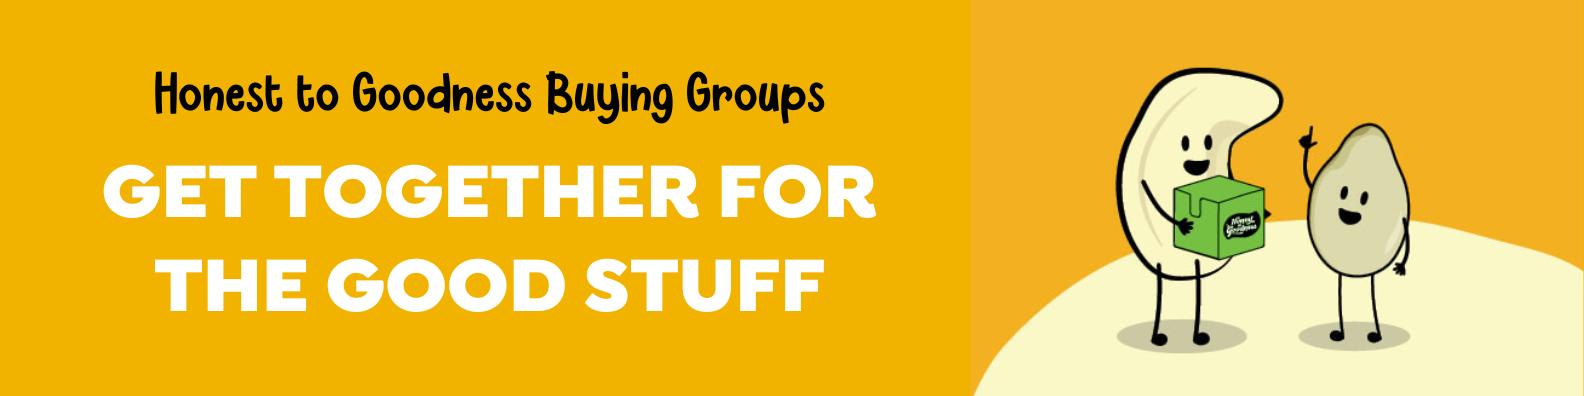 Honest to Goodness Buying Groups - Bulk Buying